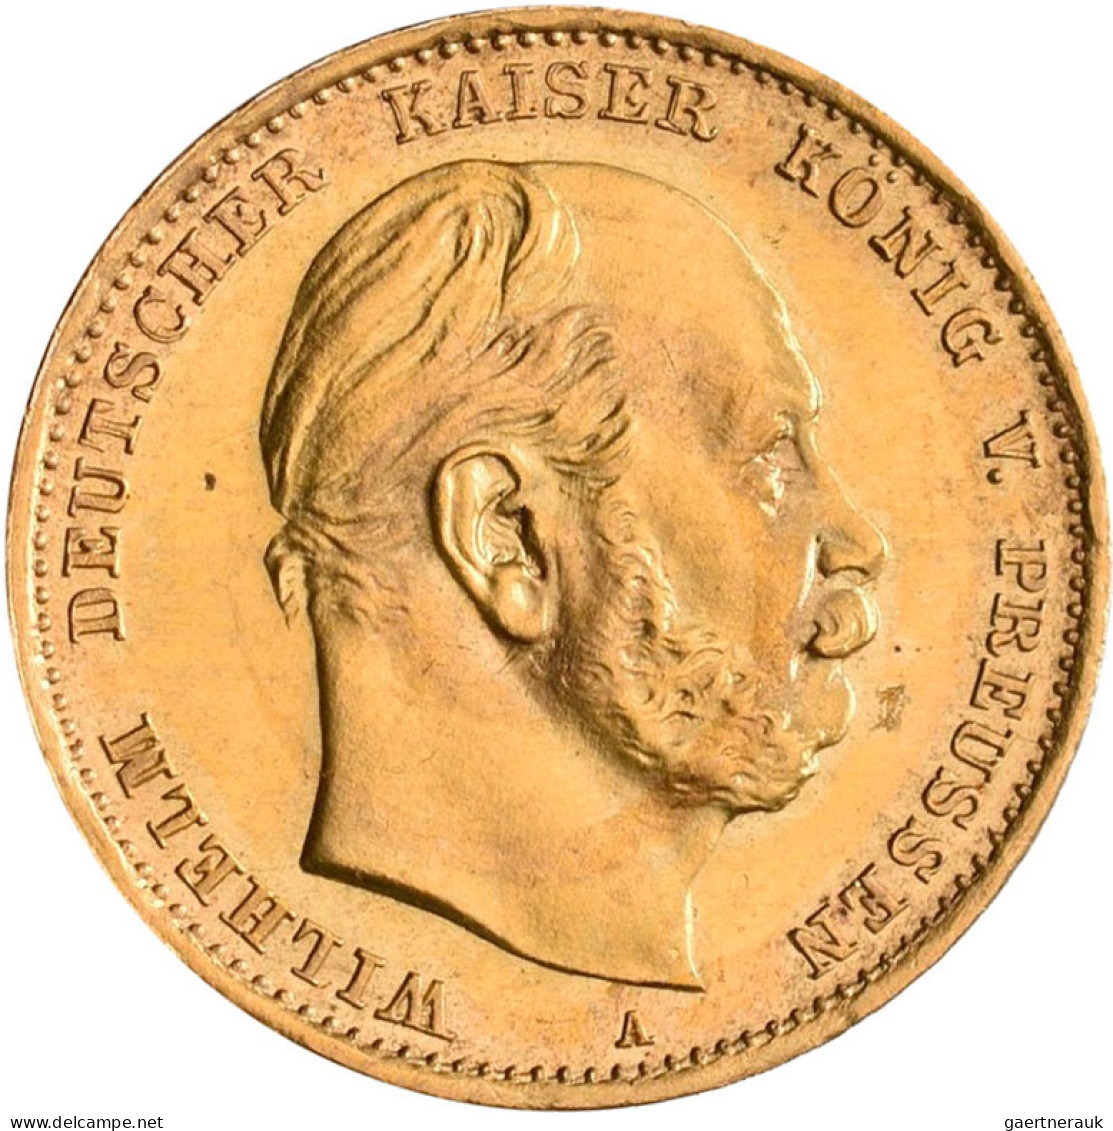 Preußen - Anlagegold: Sammlung mit 6 x 10 Mark sowie 7 x 20 Mark von Wilhelm I.